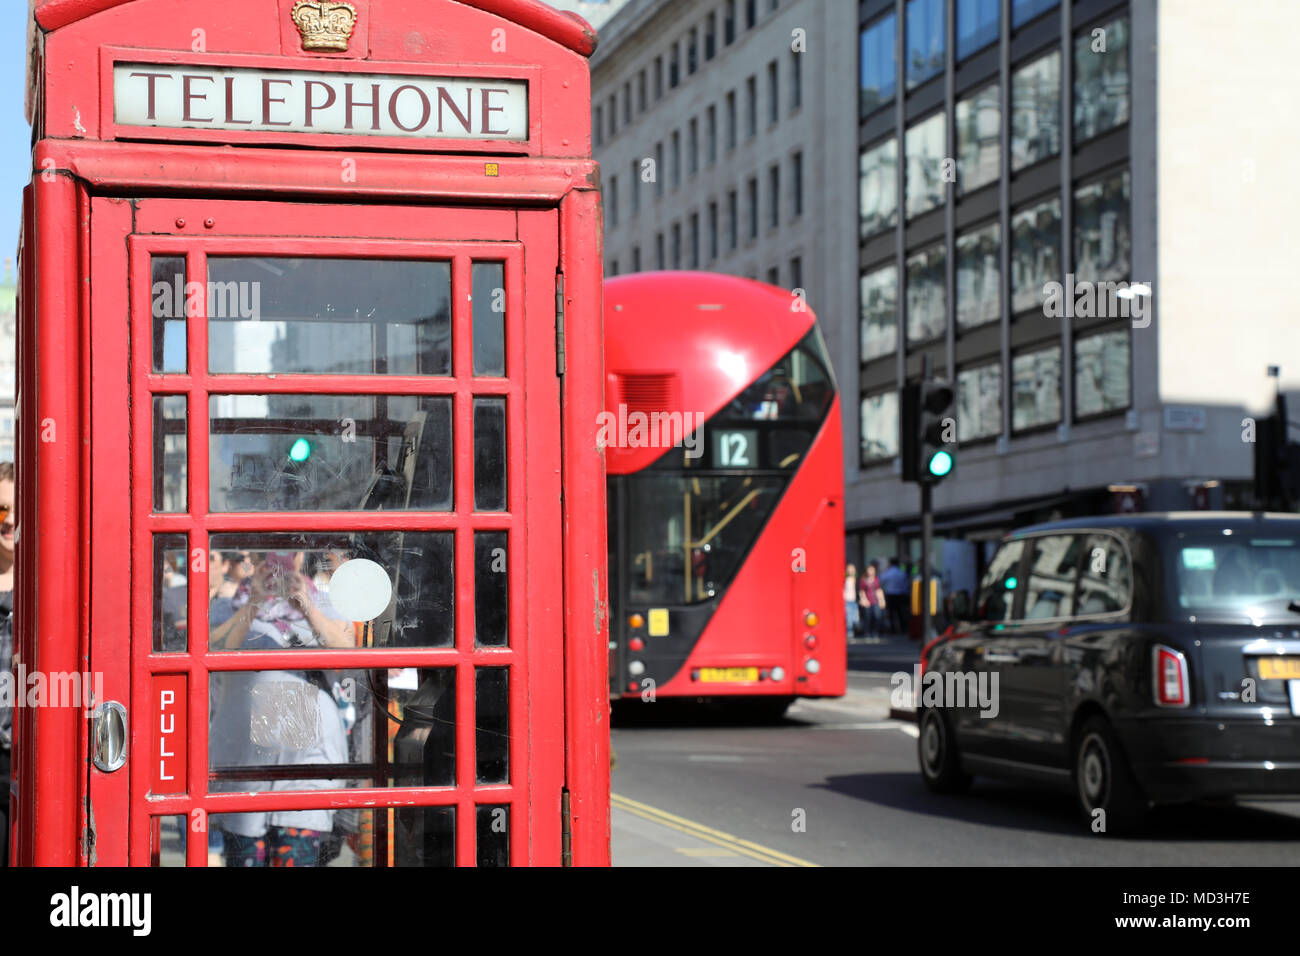 Londres, Royaume-Uni. 18 avril 2018. Une boîte de téléphone rouge sur Waterloo Place, centre de Londres, avec un rouge traditionnel et London Bus une conduite de taxi Londres noir passé, le 18 avril, 2018 Photo : Dominic Dudley/Alamy Live News Banque D'Images